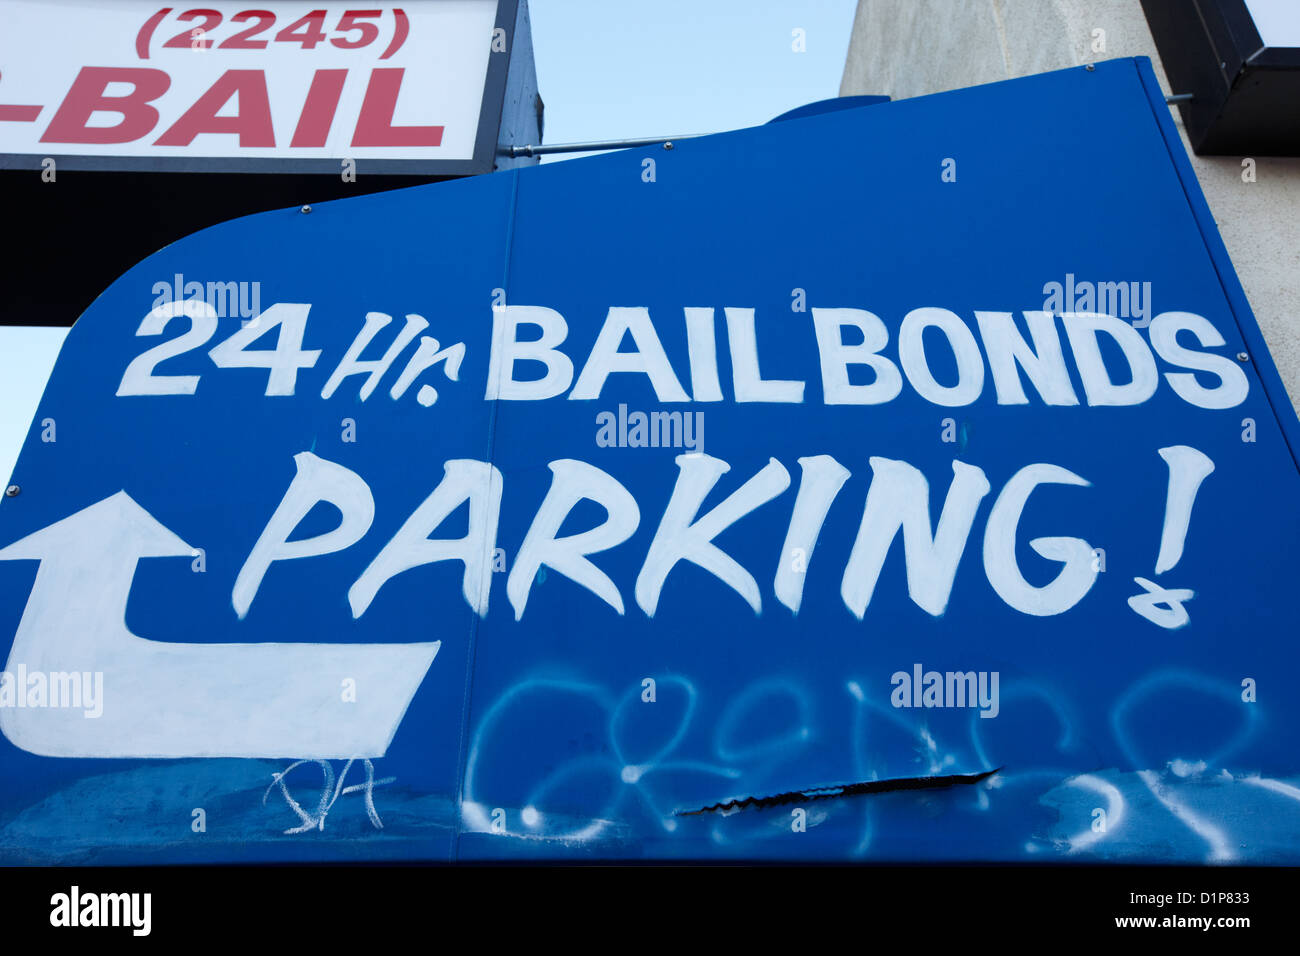 24hr Bail bonds Parkplatz Schild Las Vegas Nevada, USA Stockfoto